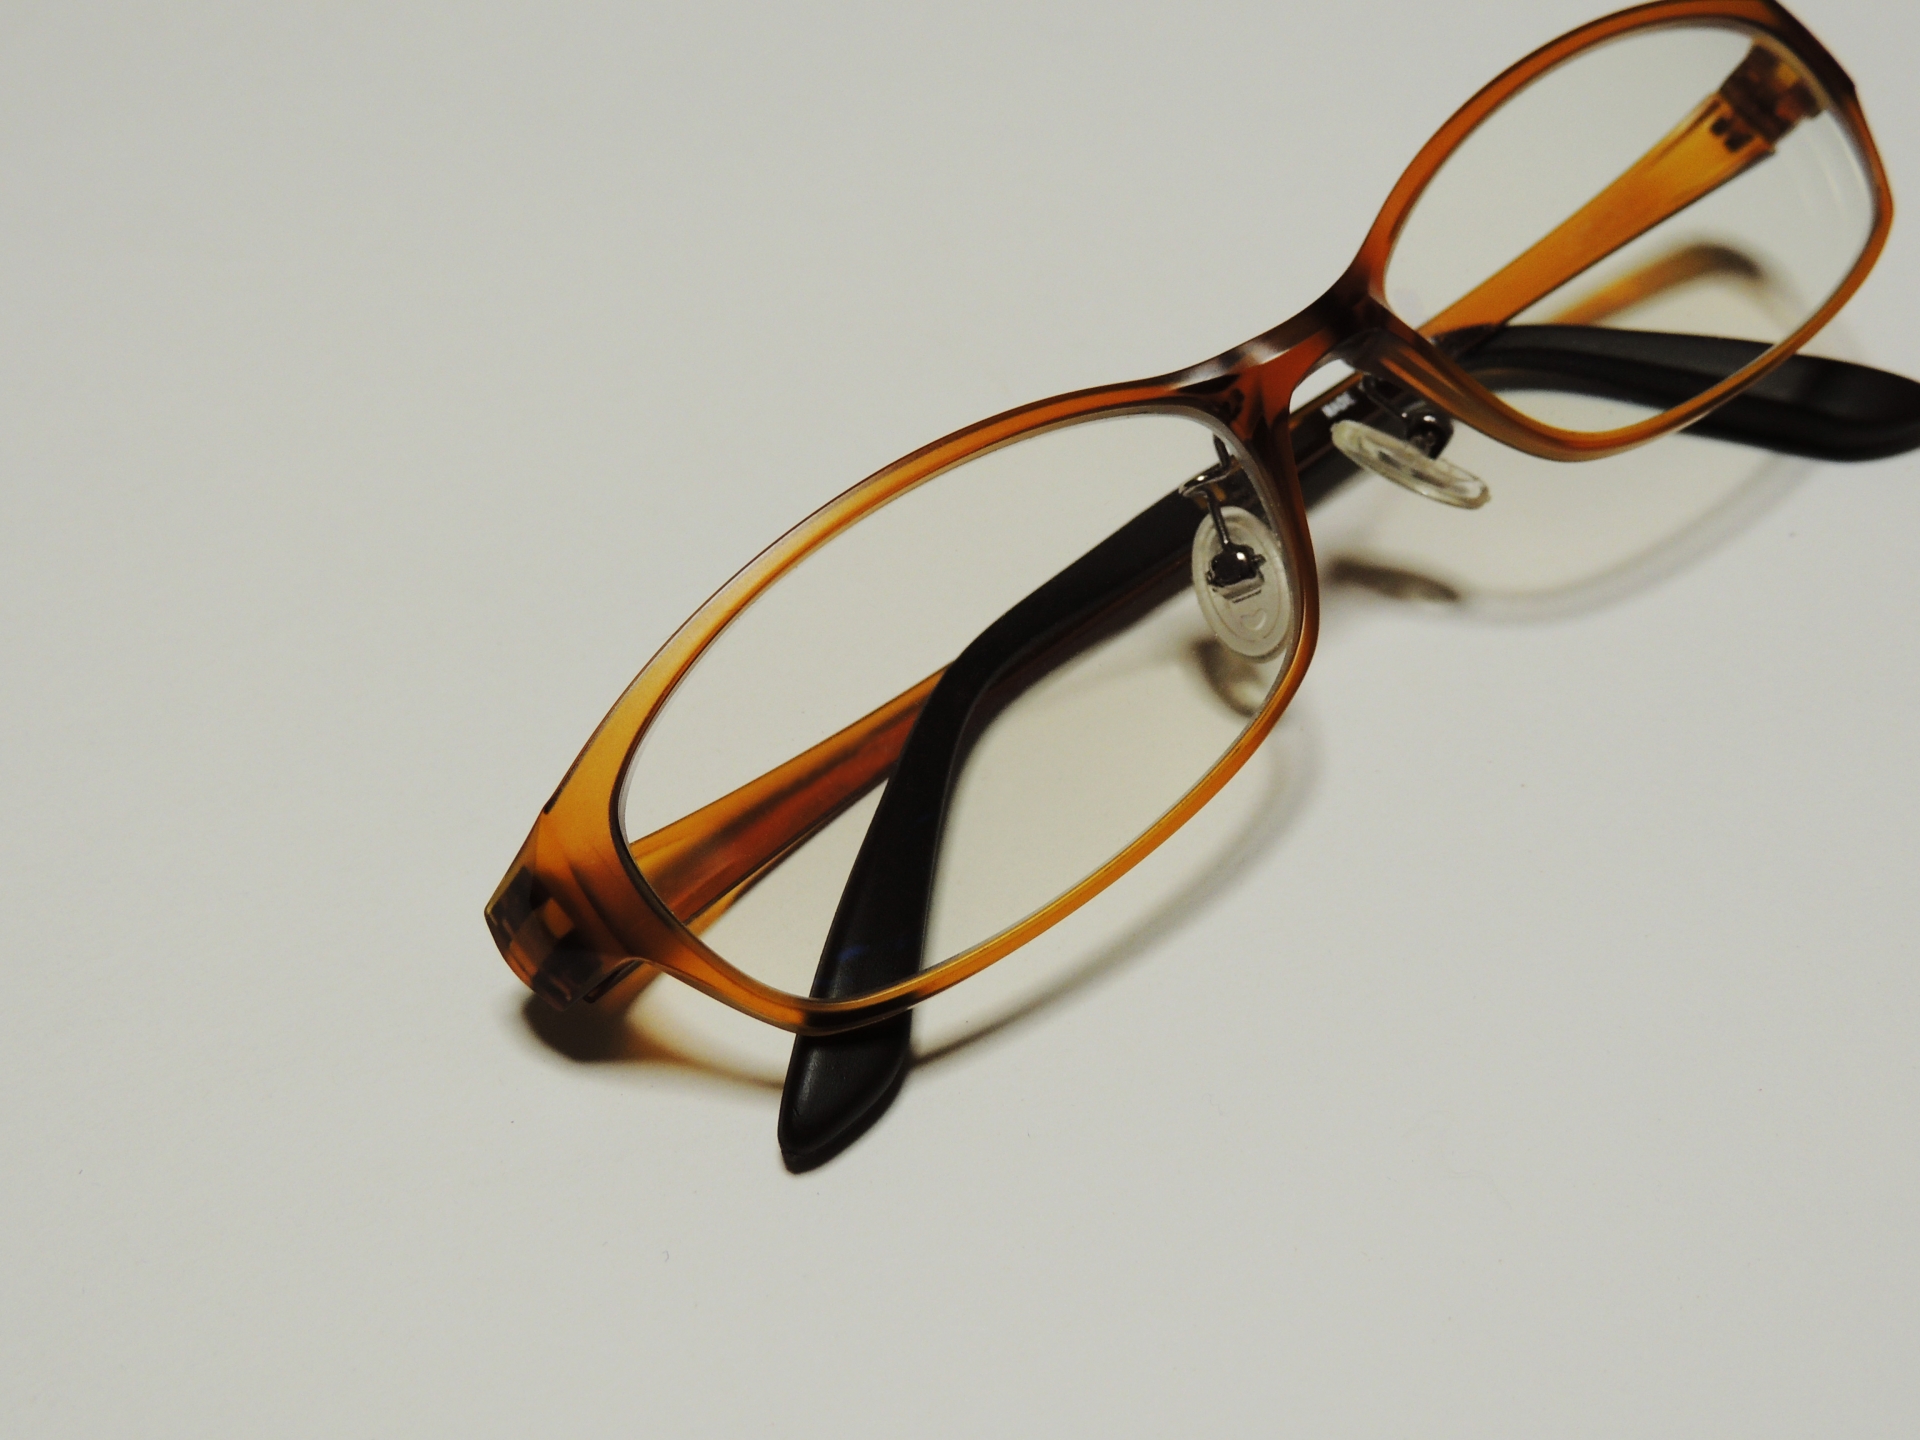 メガネのコーティングが剥がれてしまう原因や予防方法を紹介